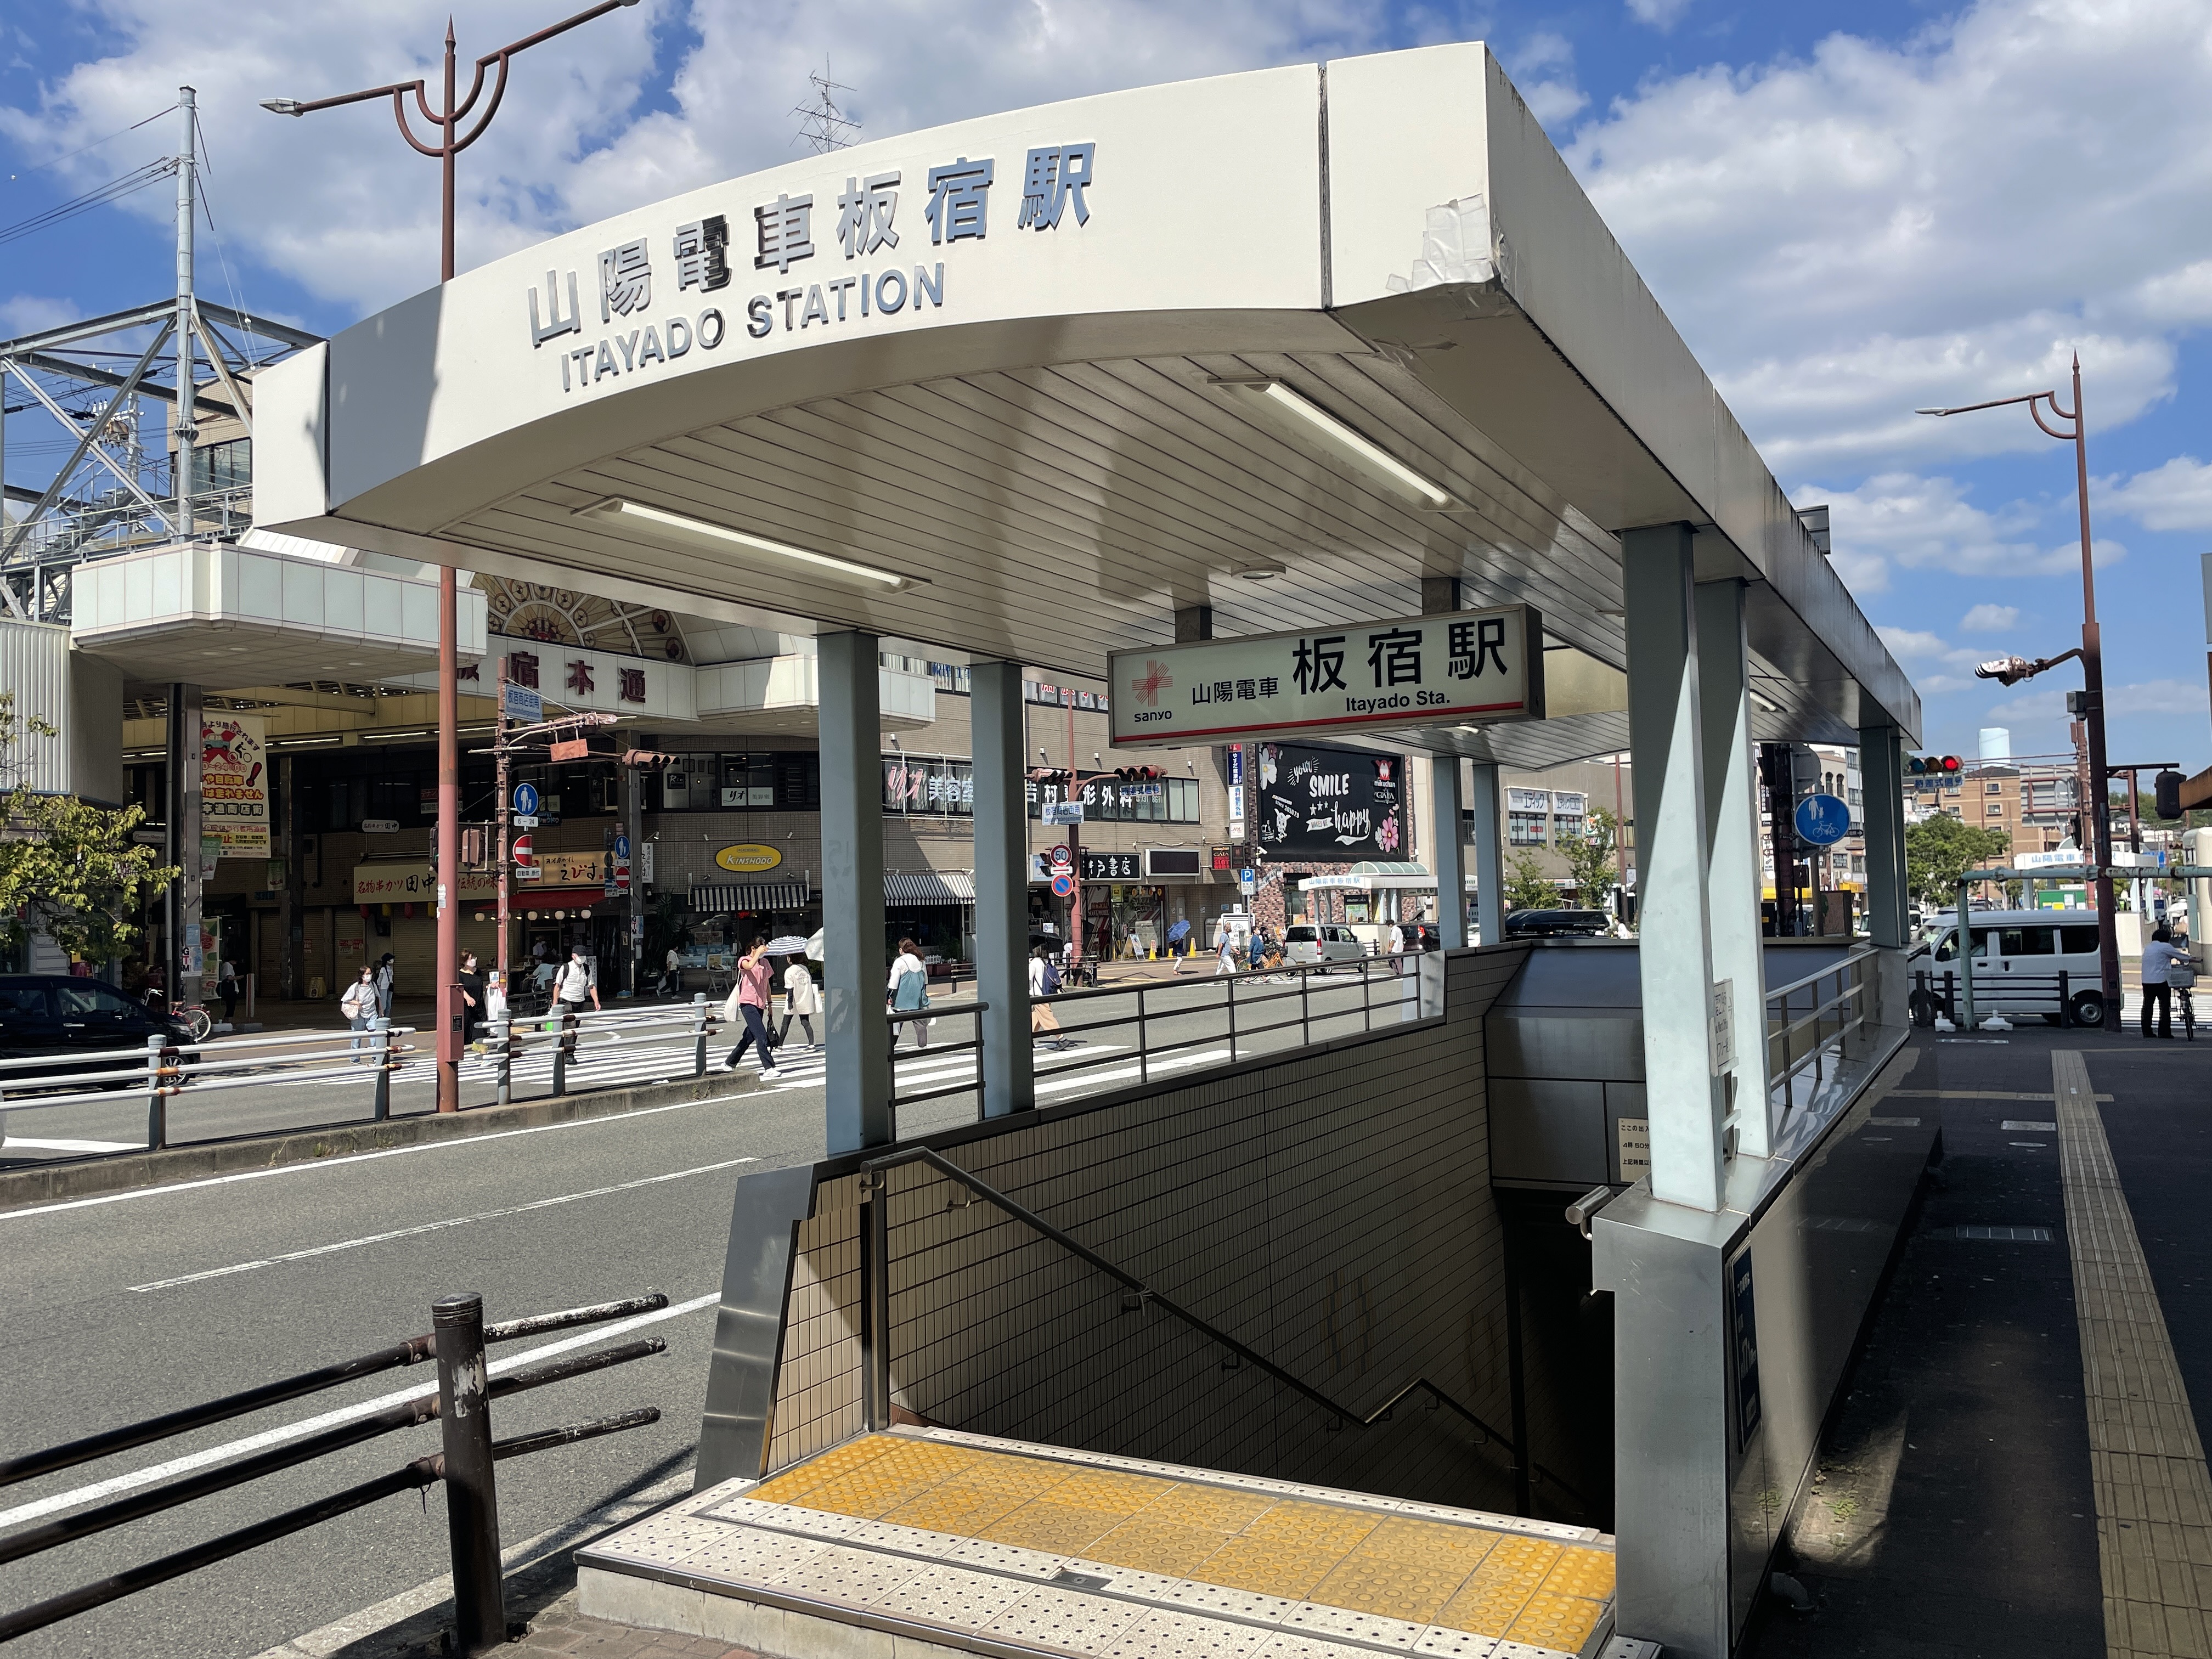 当該マンションを出て直ぐには、板宿駅への連絡口がございます。<br />
「板宿」は、神戸市営地下鉄と山陽電鉄の2沿線あり、<br />
通勤・通学・休日のお出かけにも至便です♪